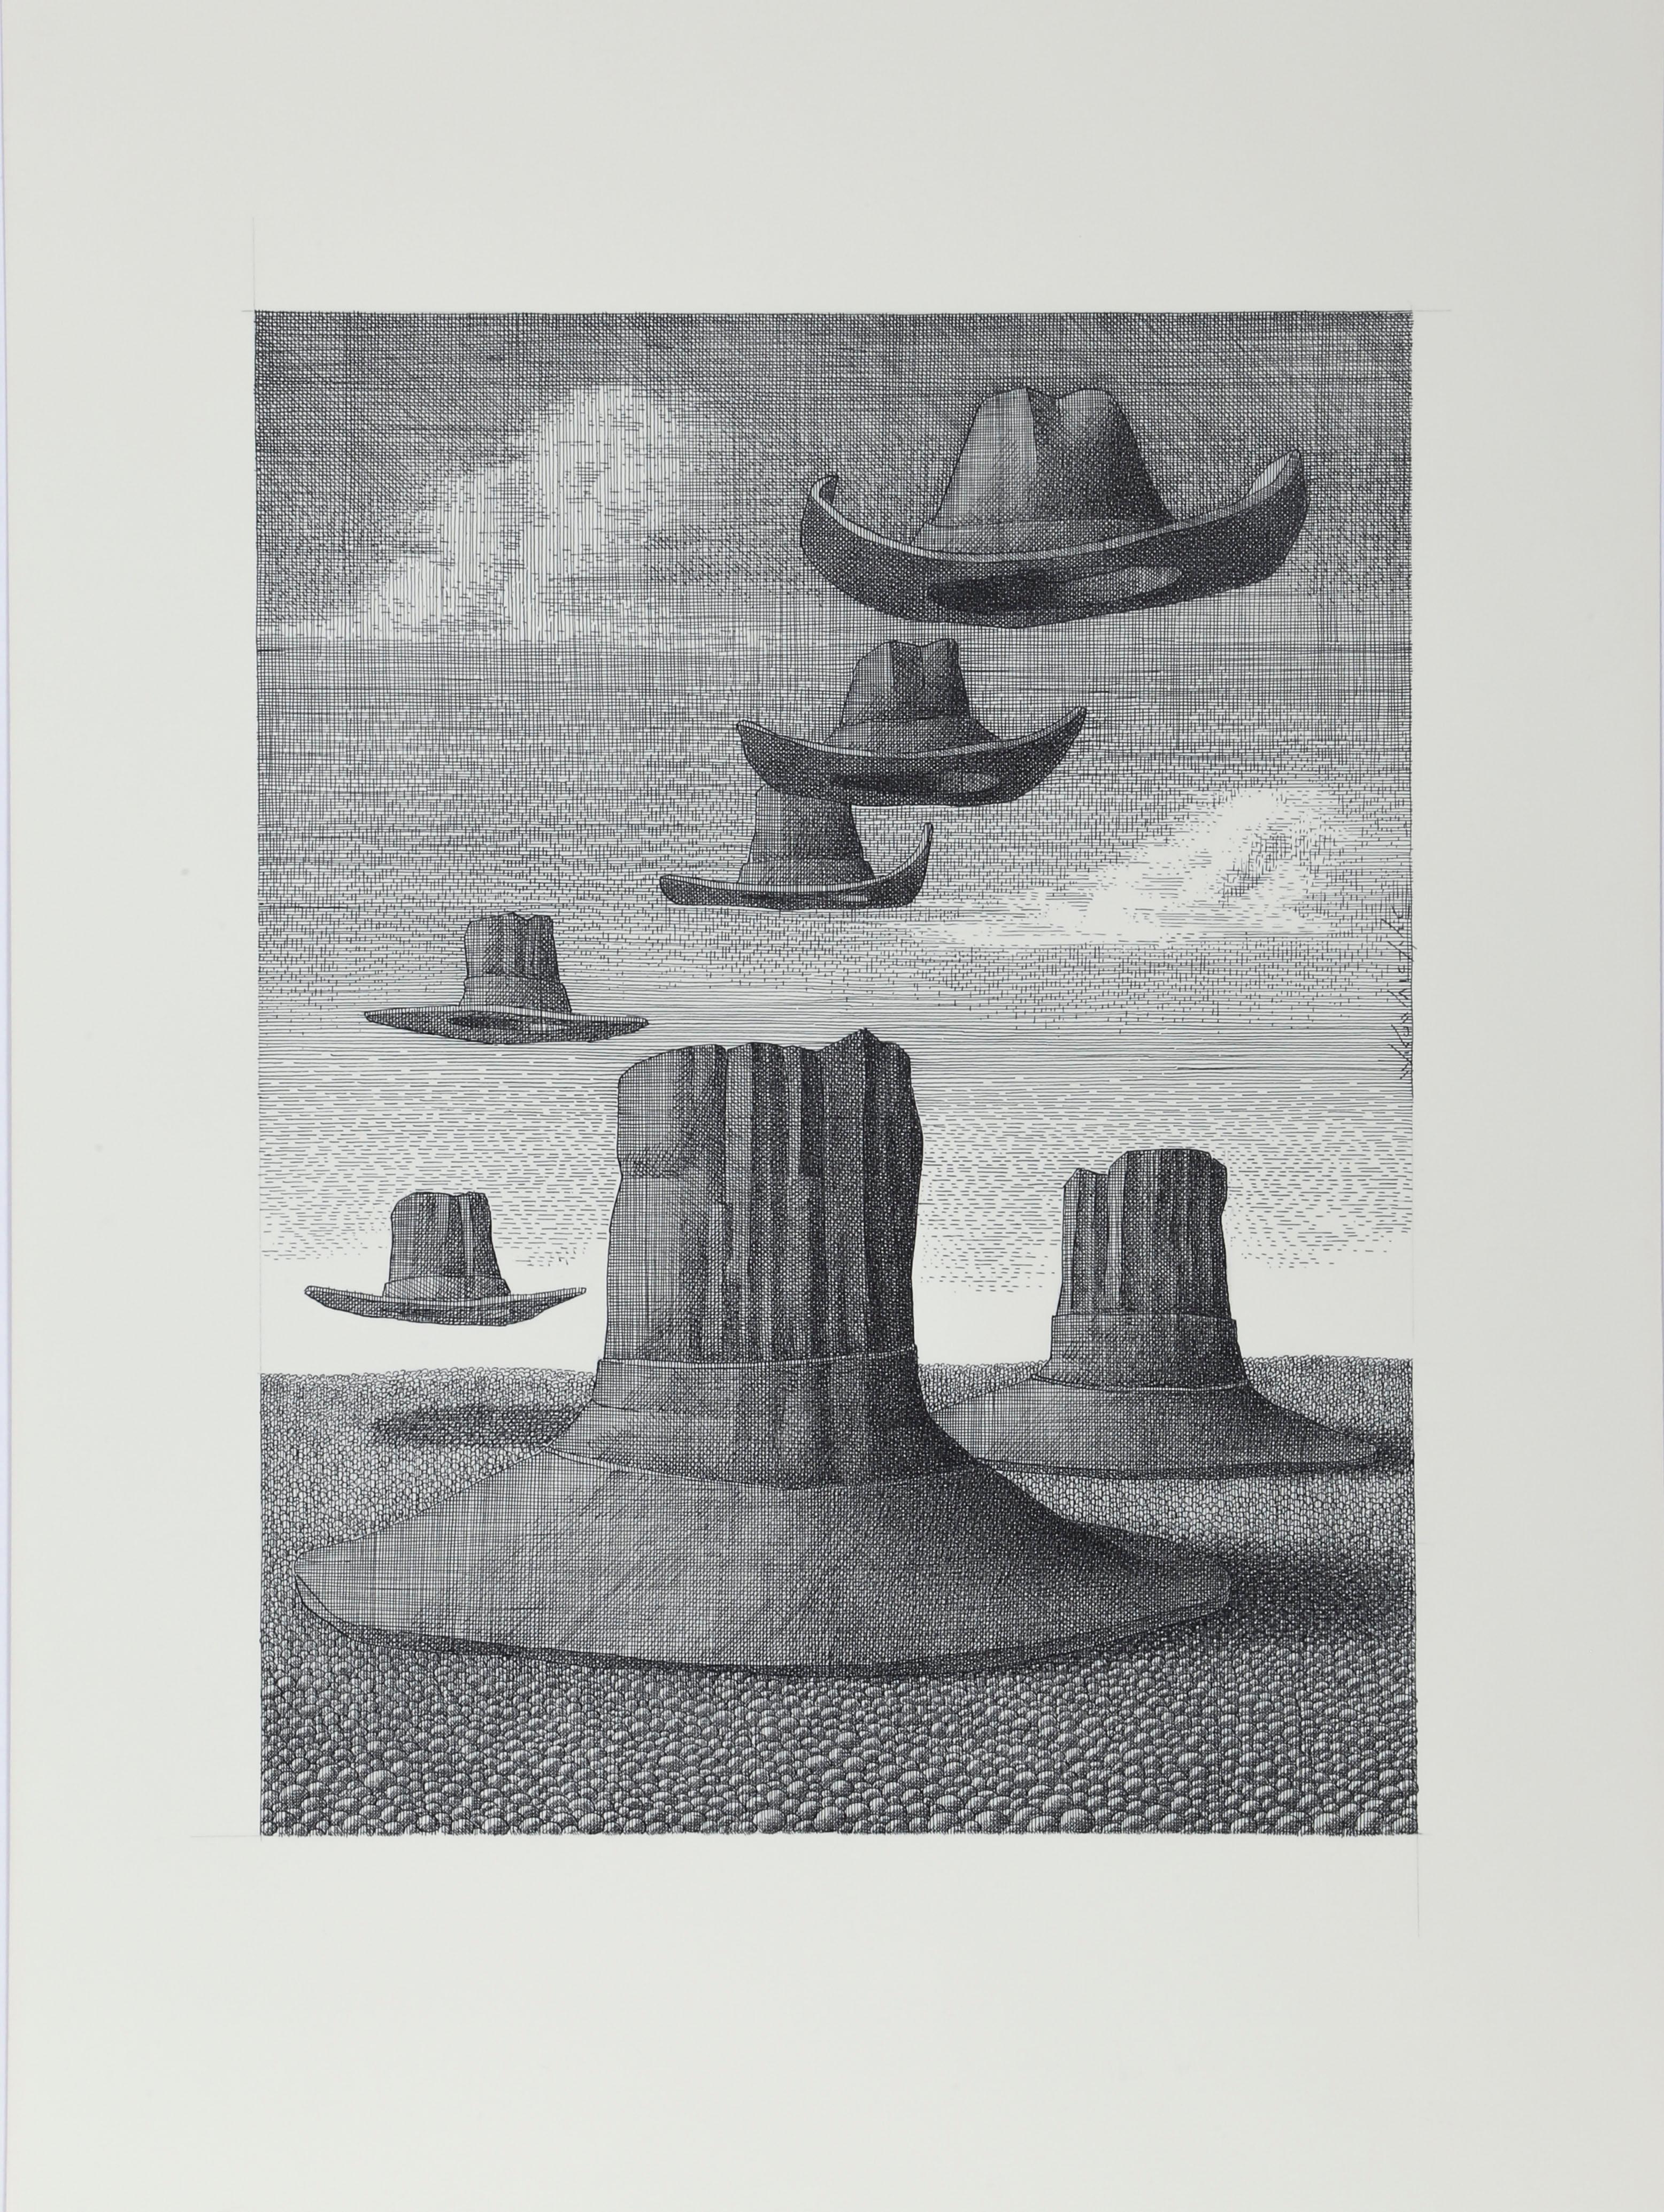 Wojtek Kowalczyk Landscape Art - Cowboy Hats, Surrealist Drawing by Wotjek Kowalczyk